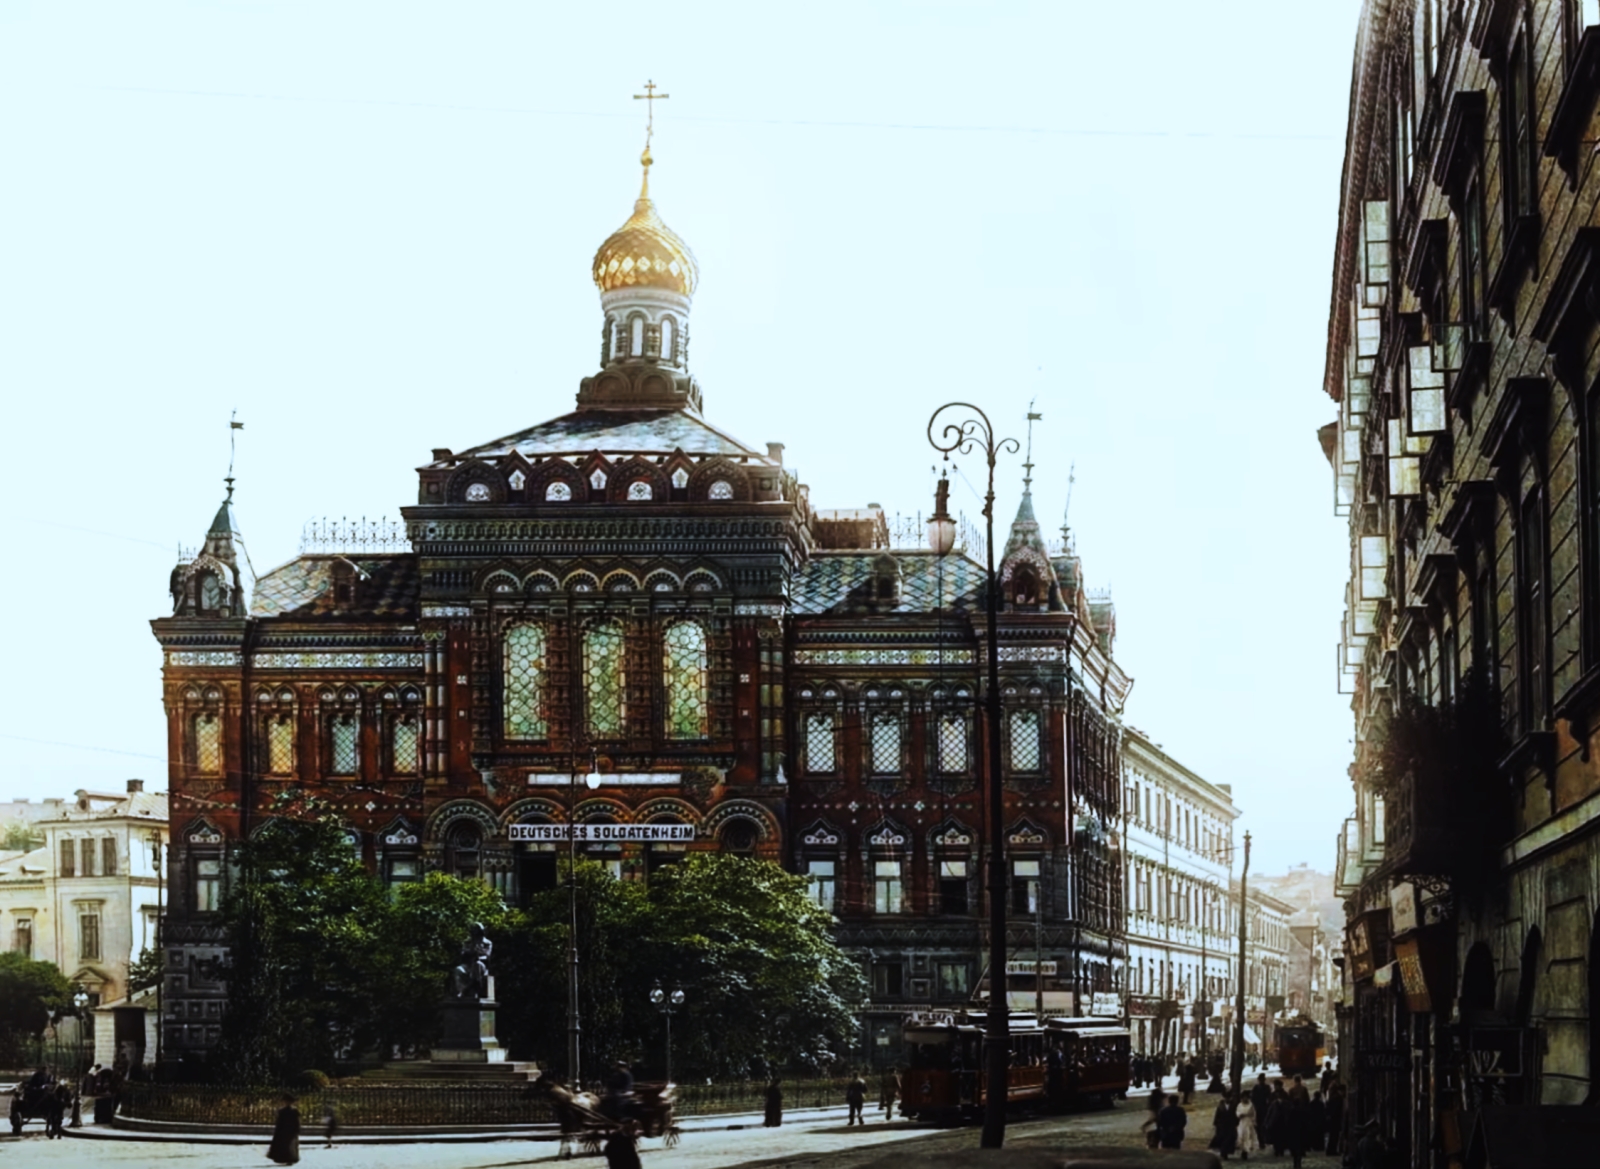 32
Pałac Staszica w ruskiej formie, w dodatku jako niemiecki soldatenheim.

Źródło:NAC/ZajacFoto (mamy pełną zgodę na publikację zdjęć. Dziękujemy.)
Słowa kluczowe: WagonA 32+P9 9 KrakowskiePrzedmieście 1920